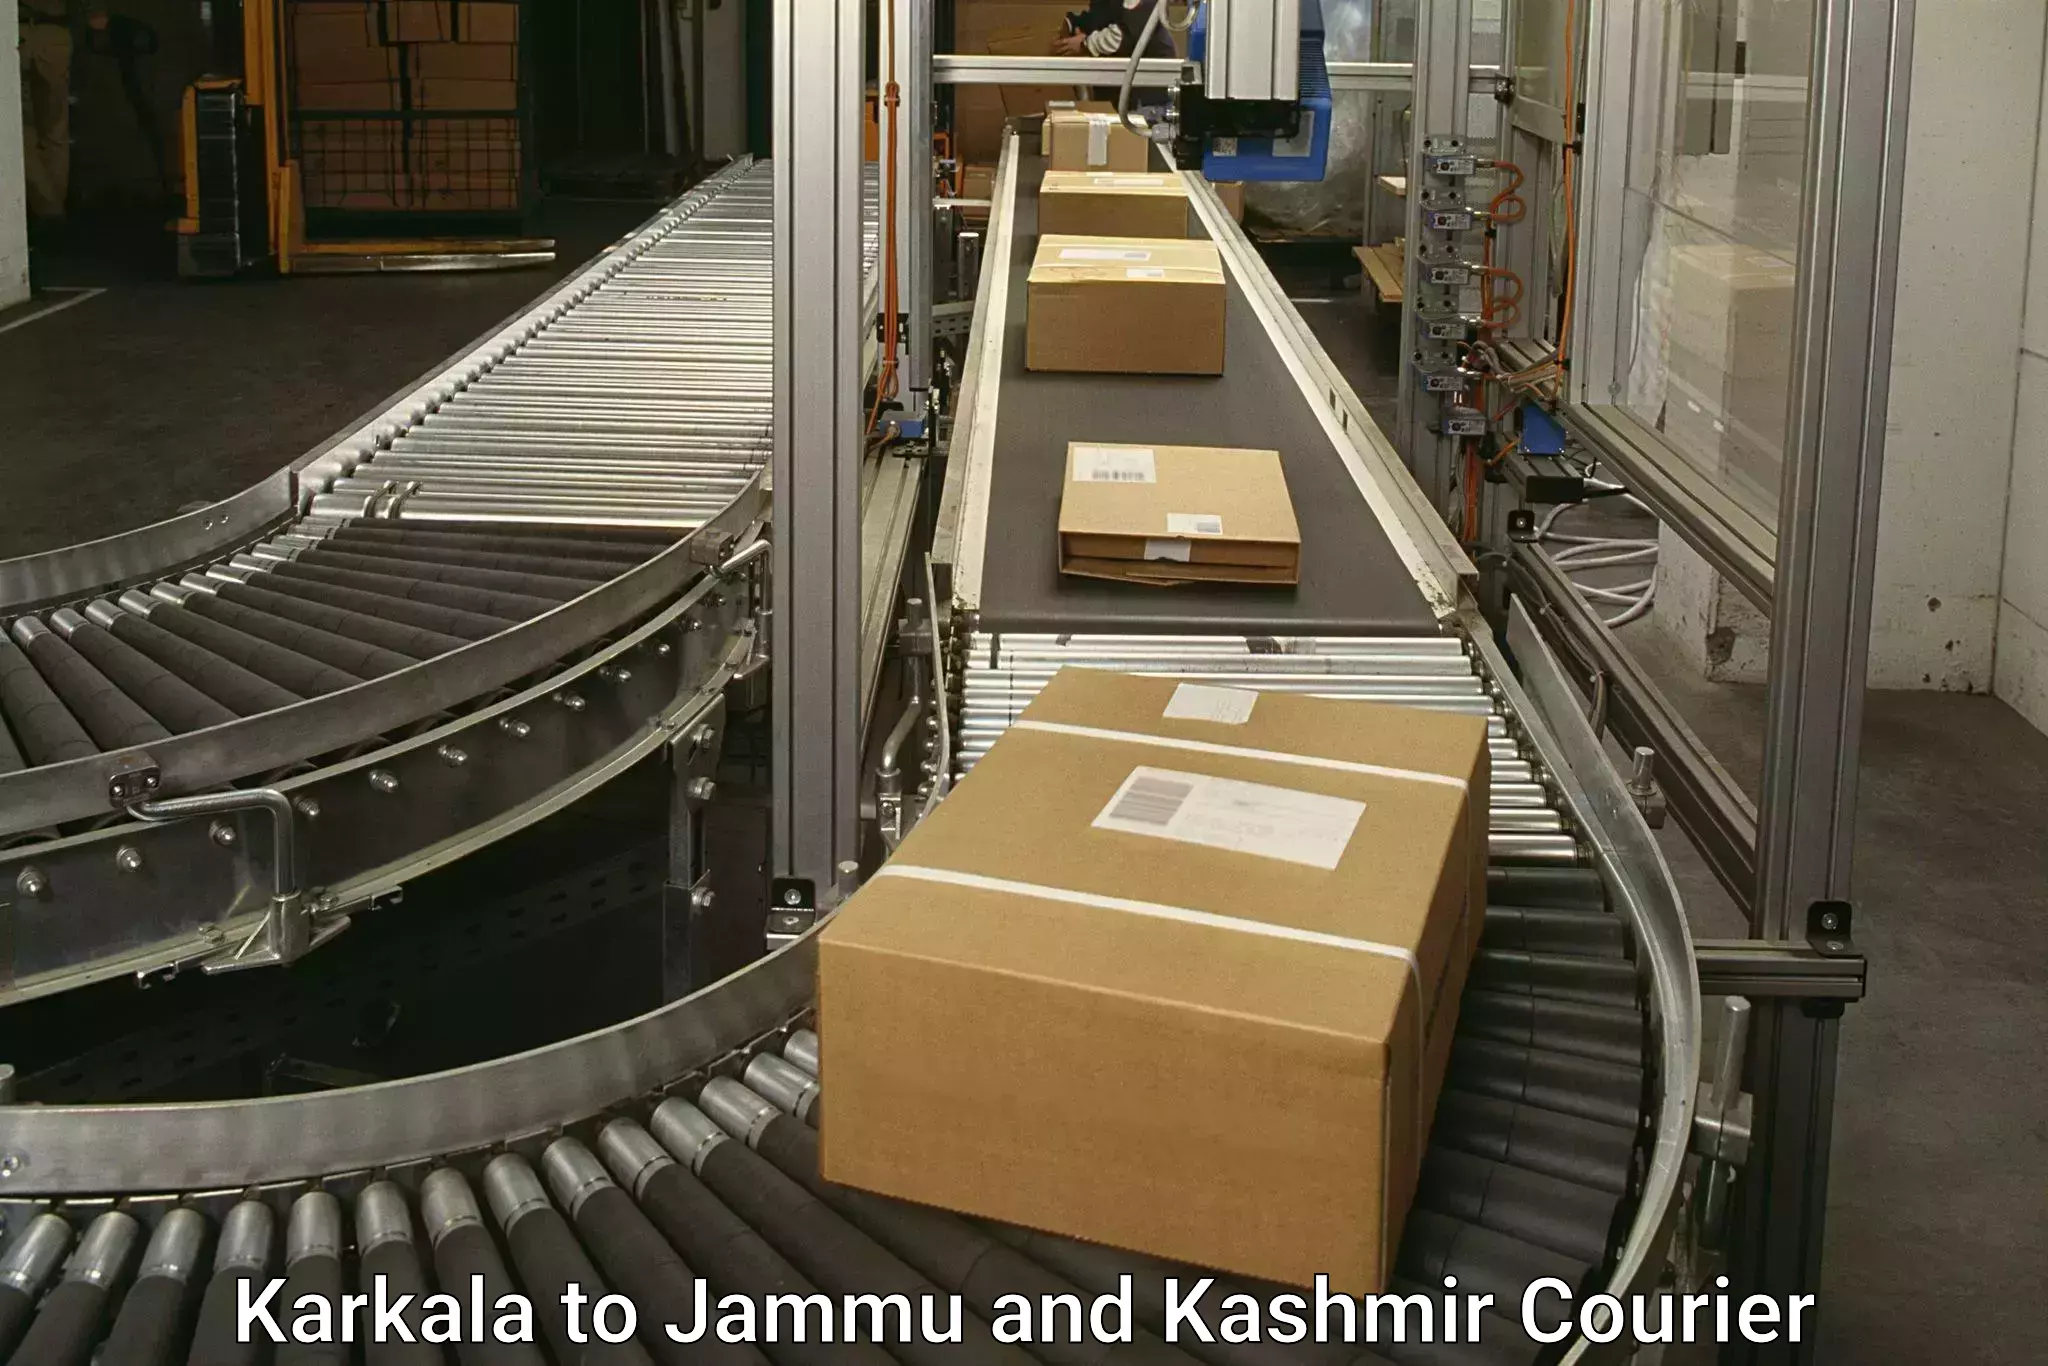 Quick dispatch service Karkala to IIT Jammu